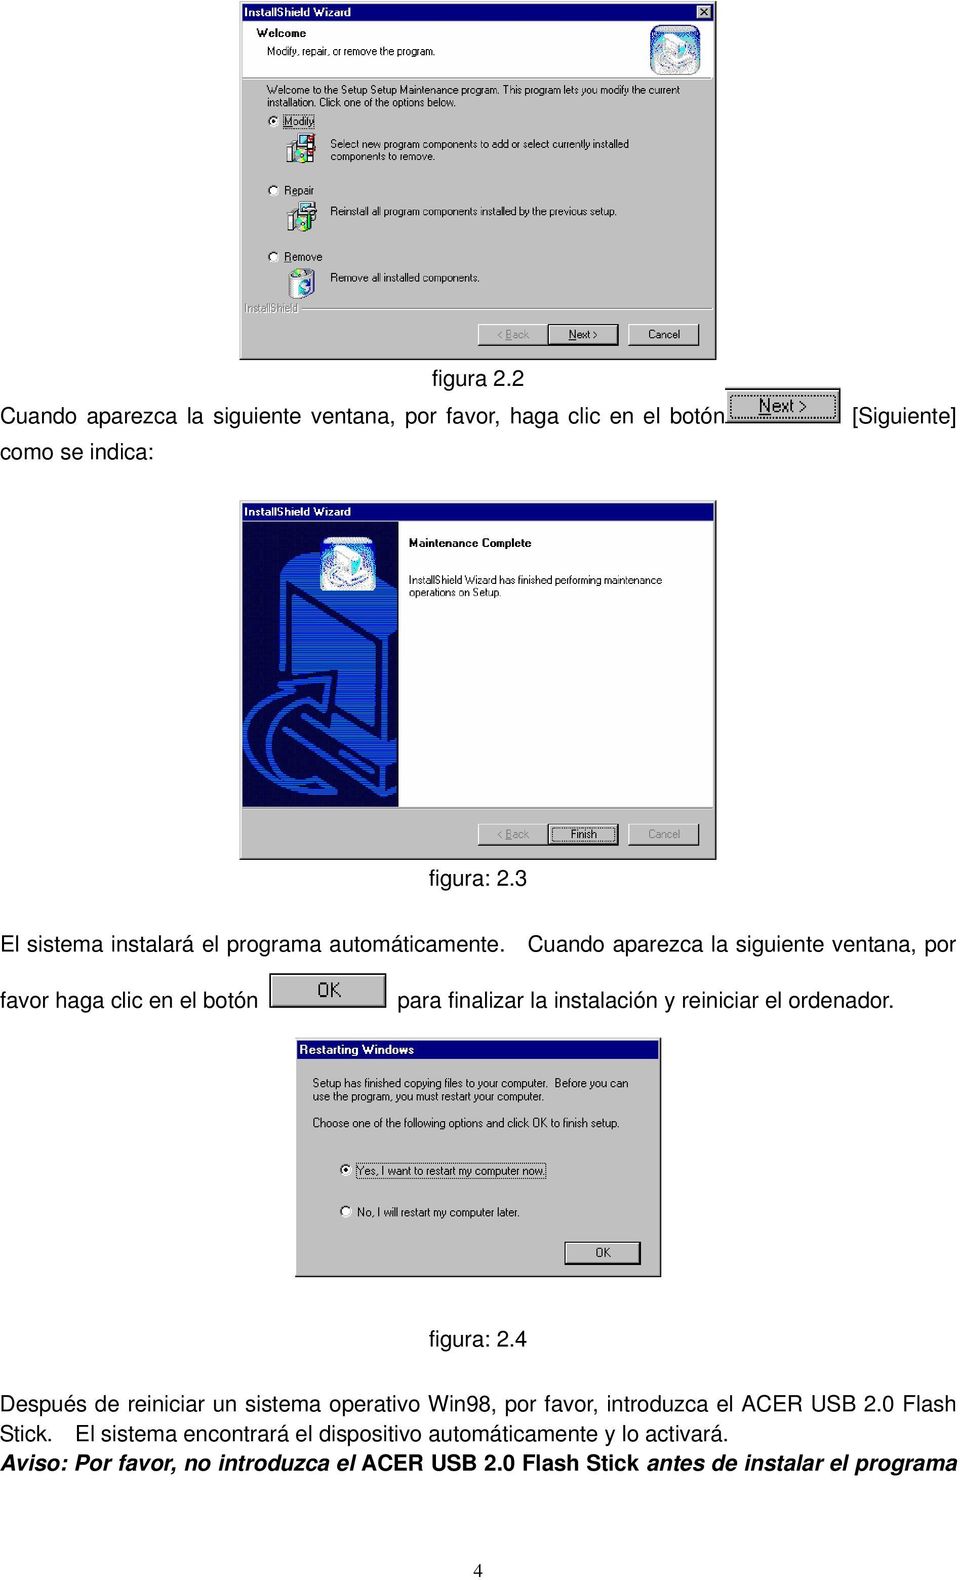 Cuando aparezca la siguiente ventana, por favor haga clic en el botón para finalizar la instalación y reiniciar el ordenador. figura: 2.